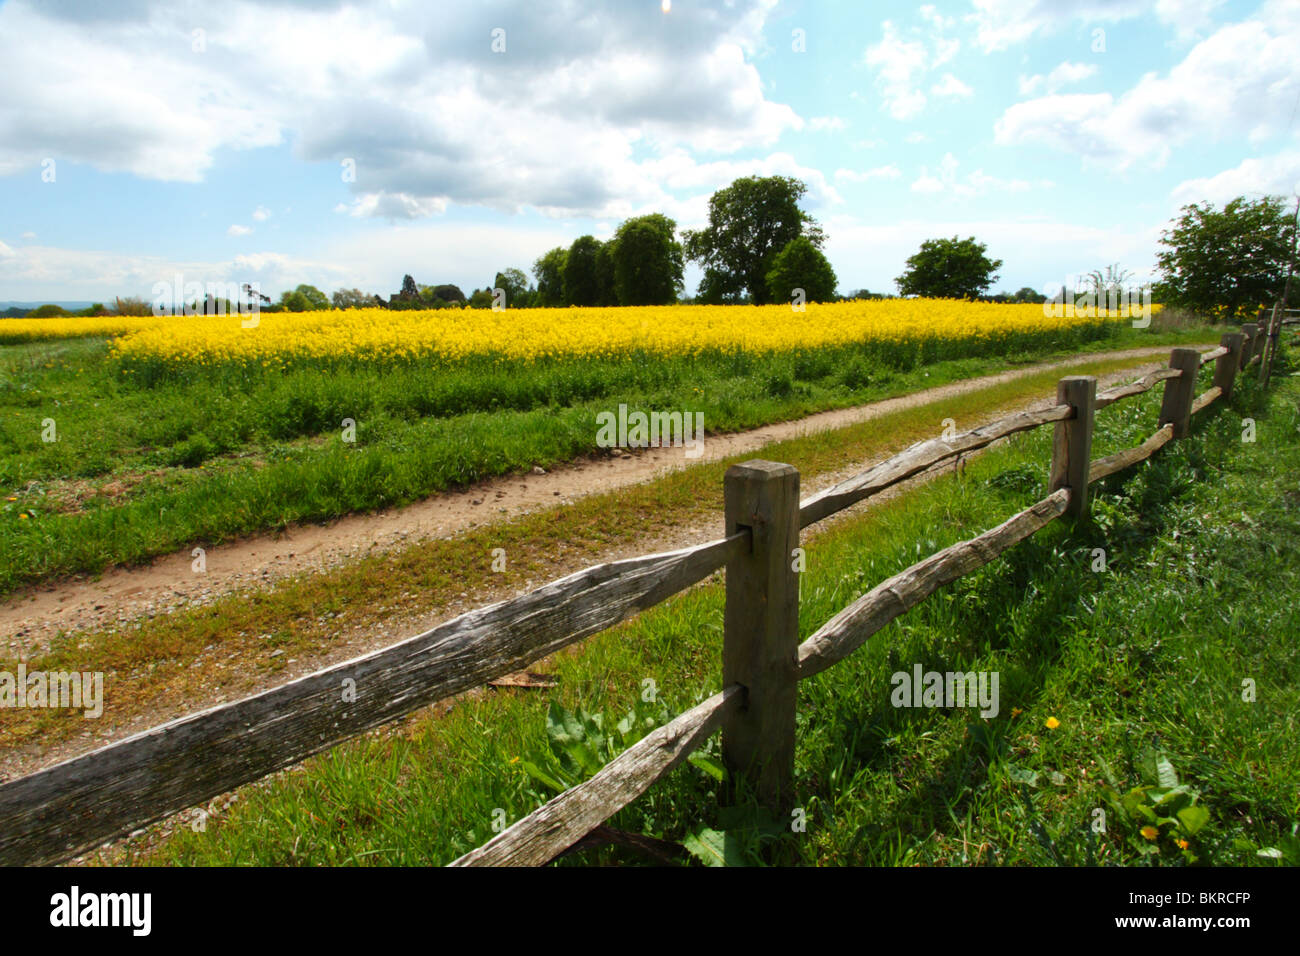 Una staccionata in legno lungo il bordo dei campi di colza (canola) in Oxfordshire, Regno Unito Foto Stock